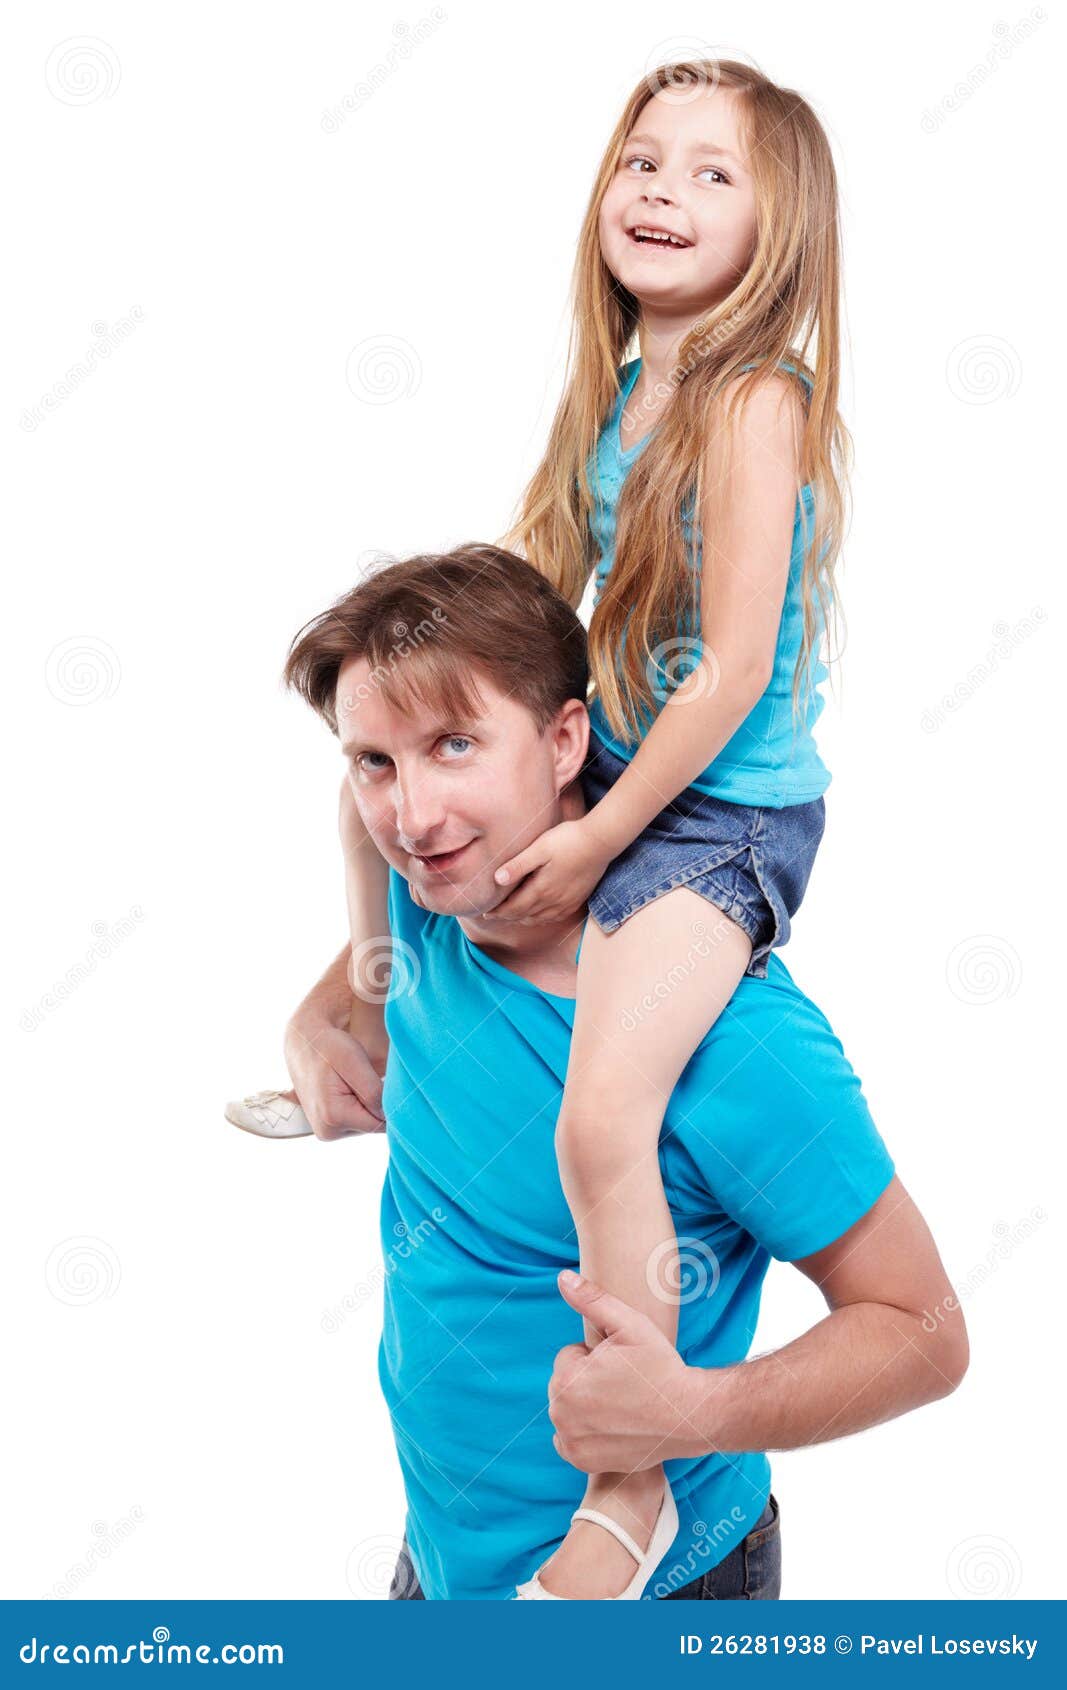 Дочка папе в трусы. Девочка сидит на плечах. Девочка сидит на плечах у отца. Девочка сидит на плечах мальчика. Девочка сидит у папы на шее.